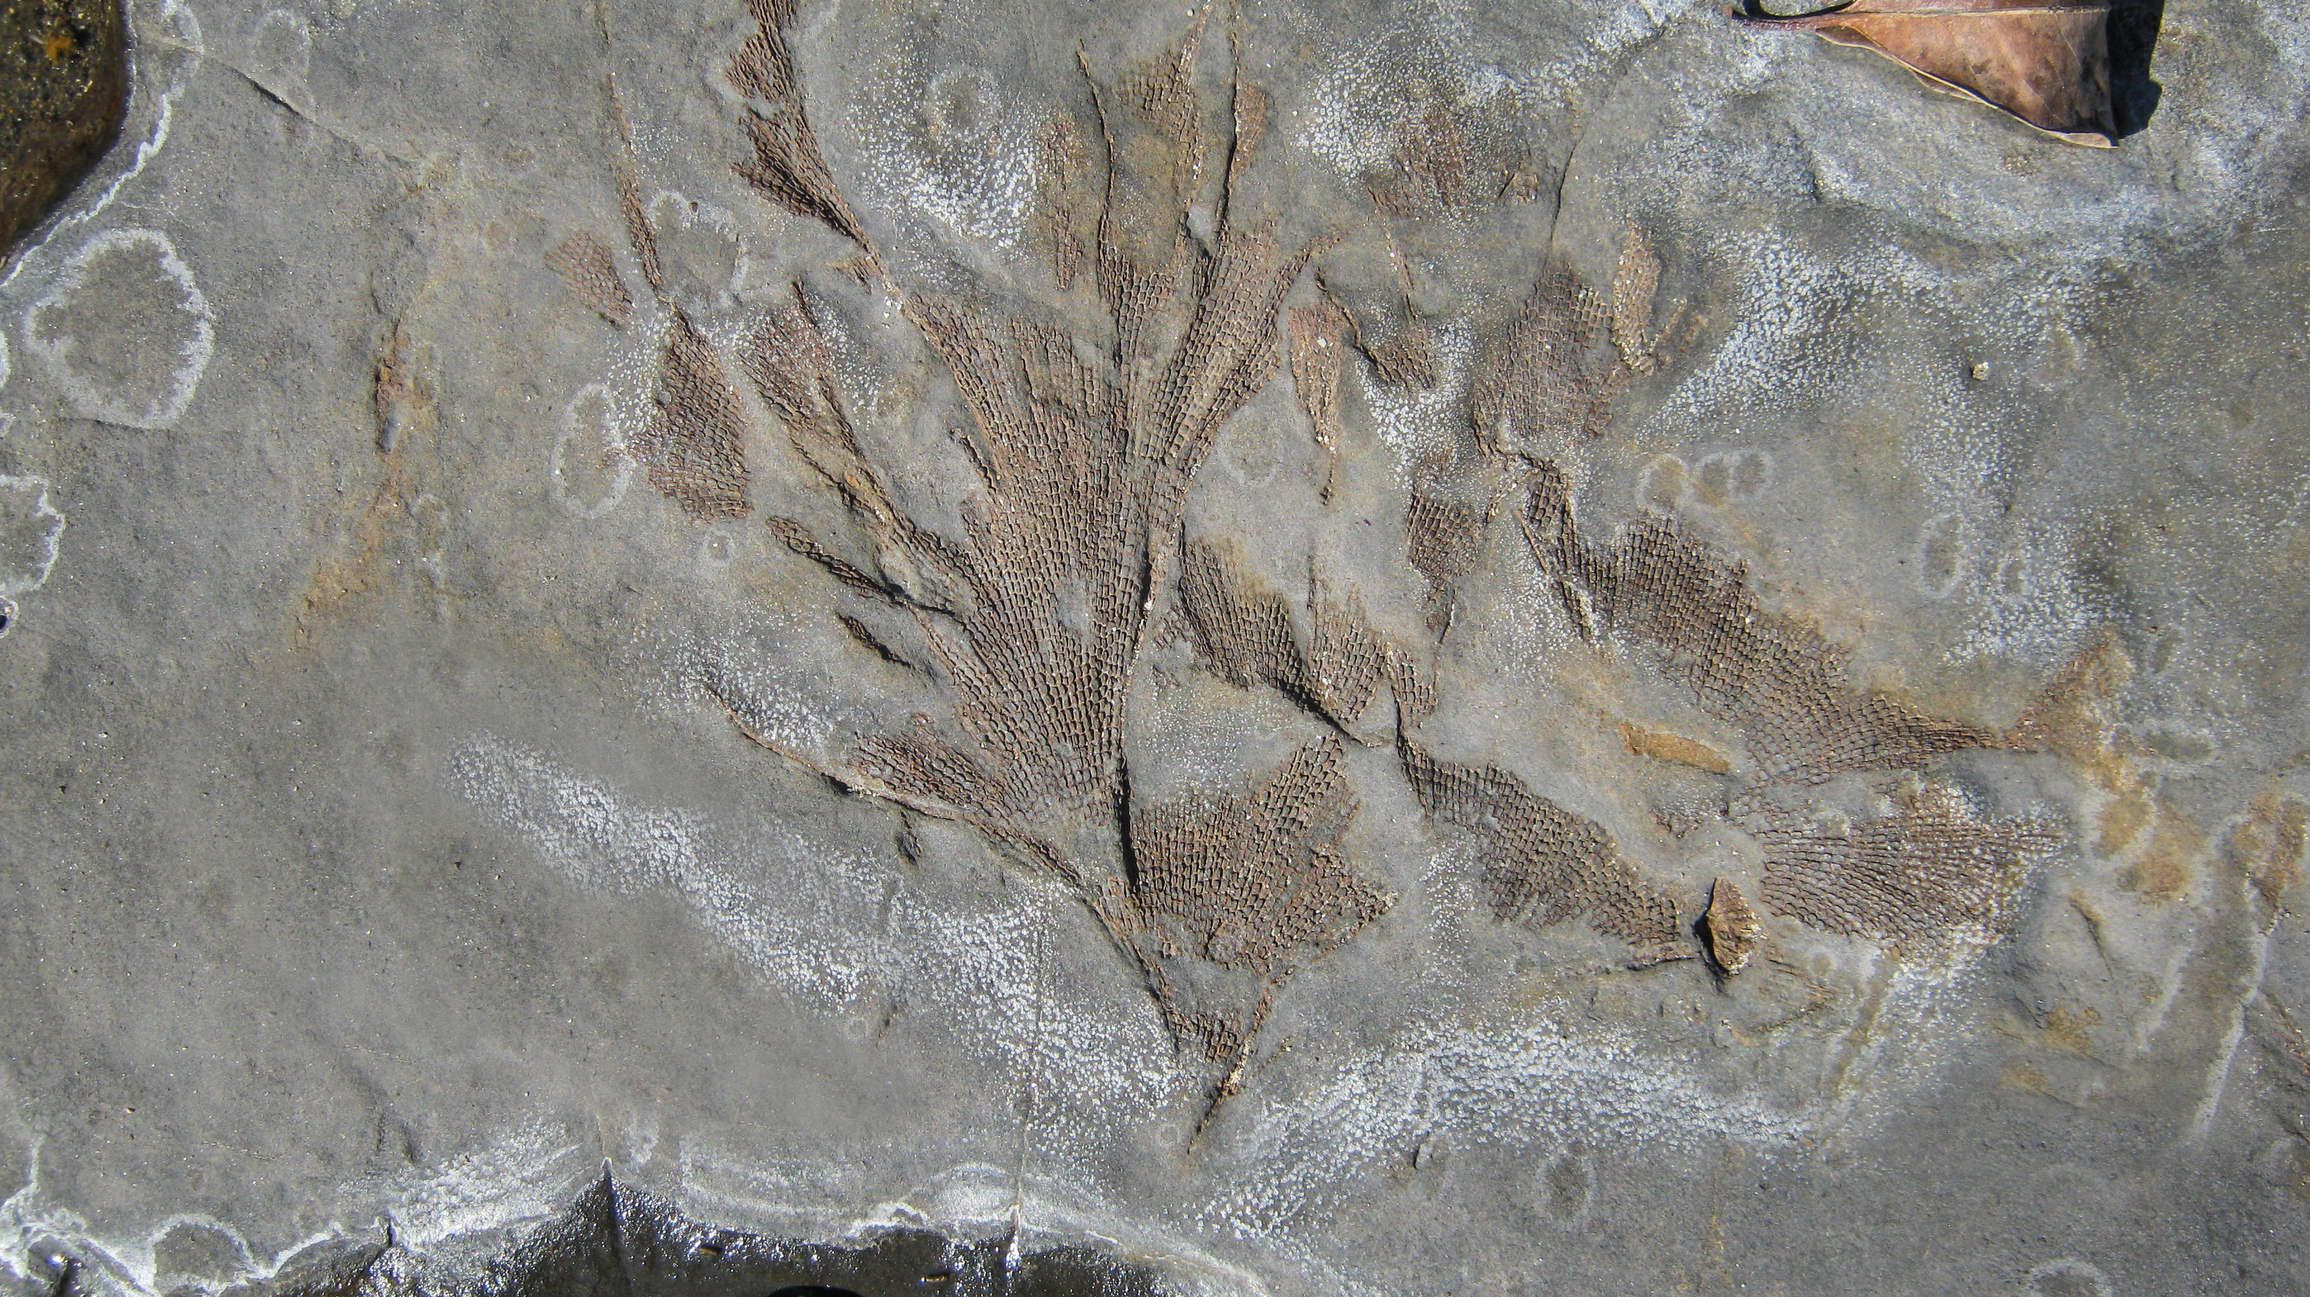 Fossilized bryozoan fan